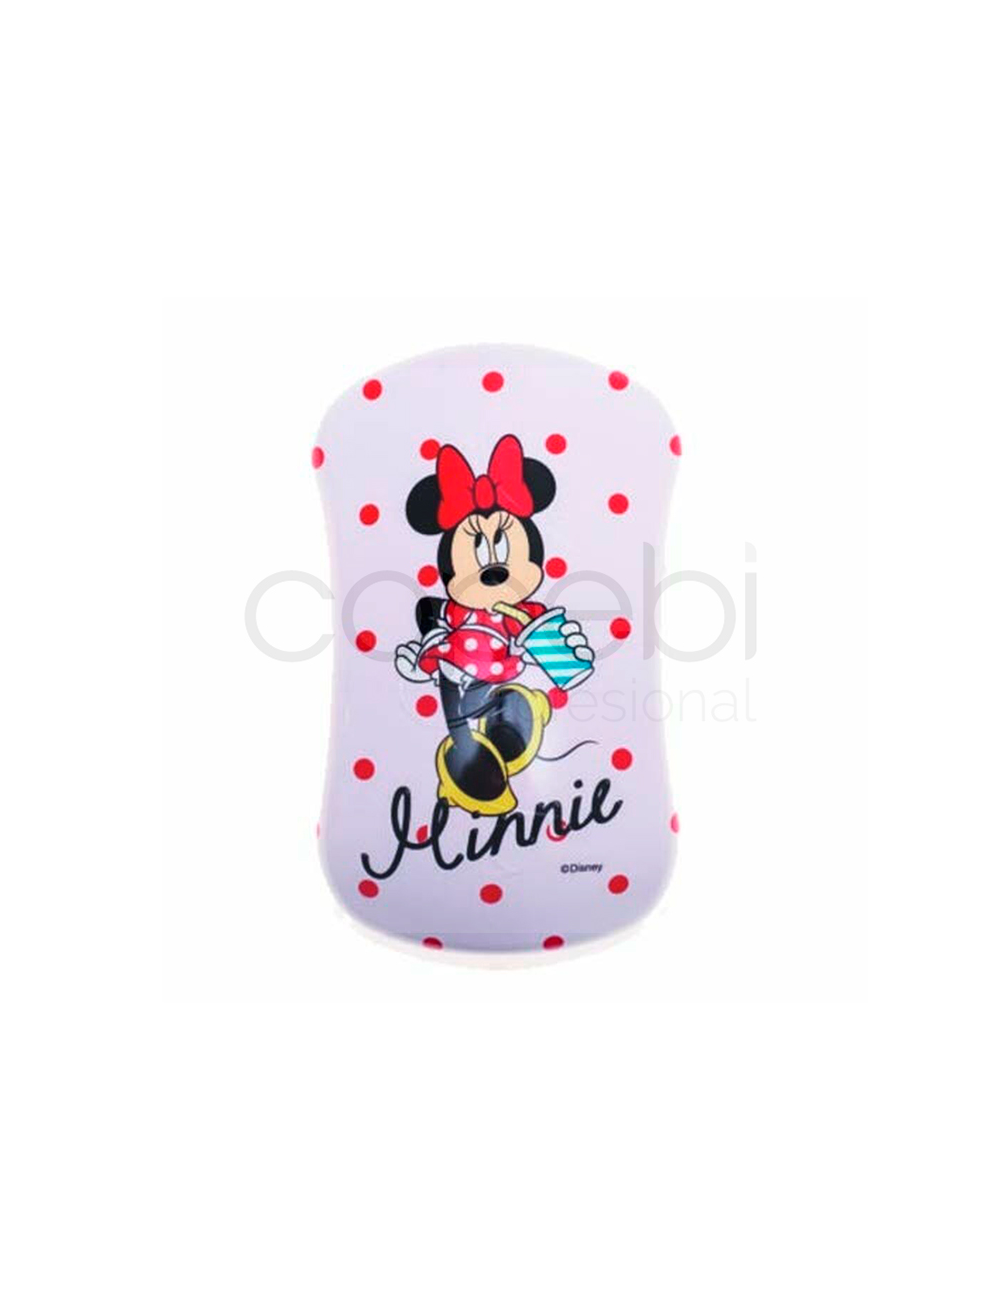 Dessata Cepillo Prints Minnie Mouse